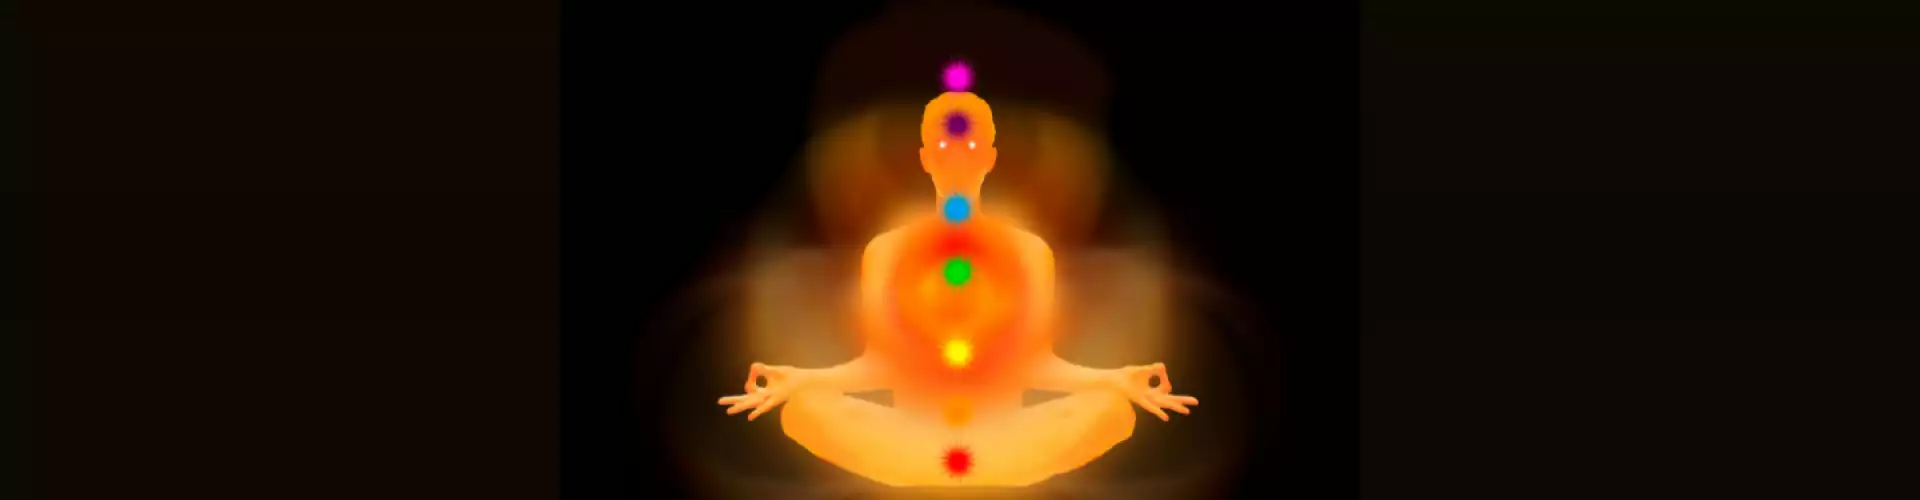 瑜伽 Prānāyāma 打开你的眉心轮